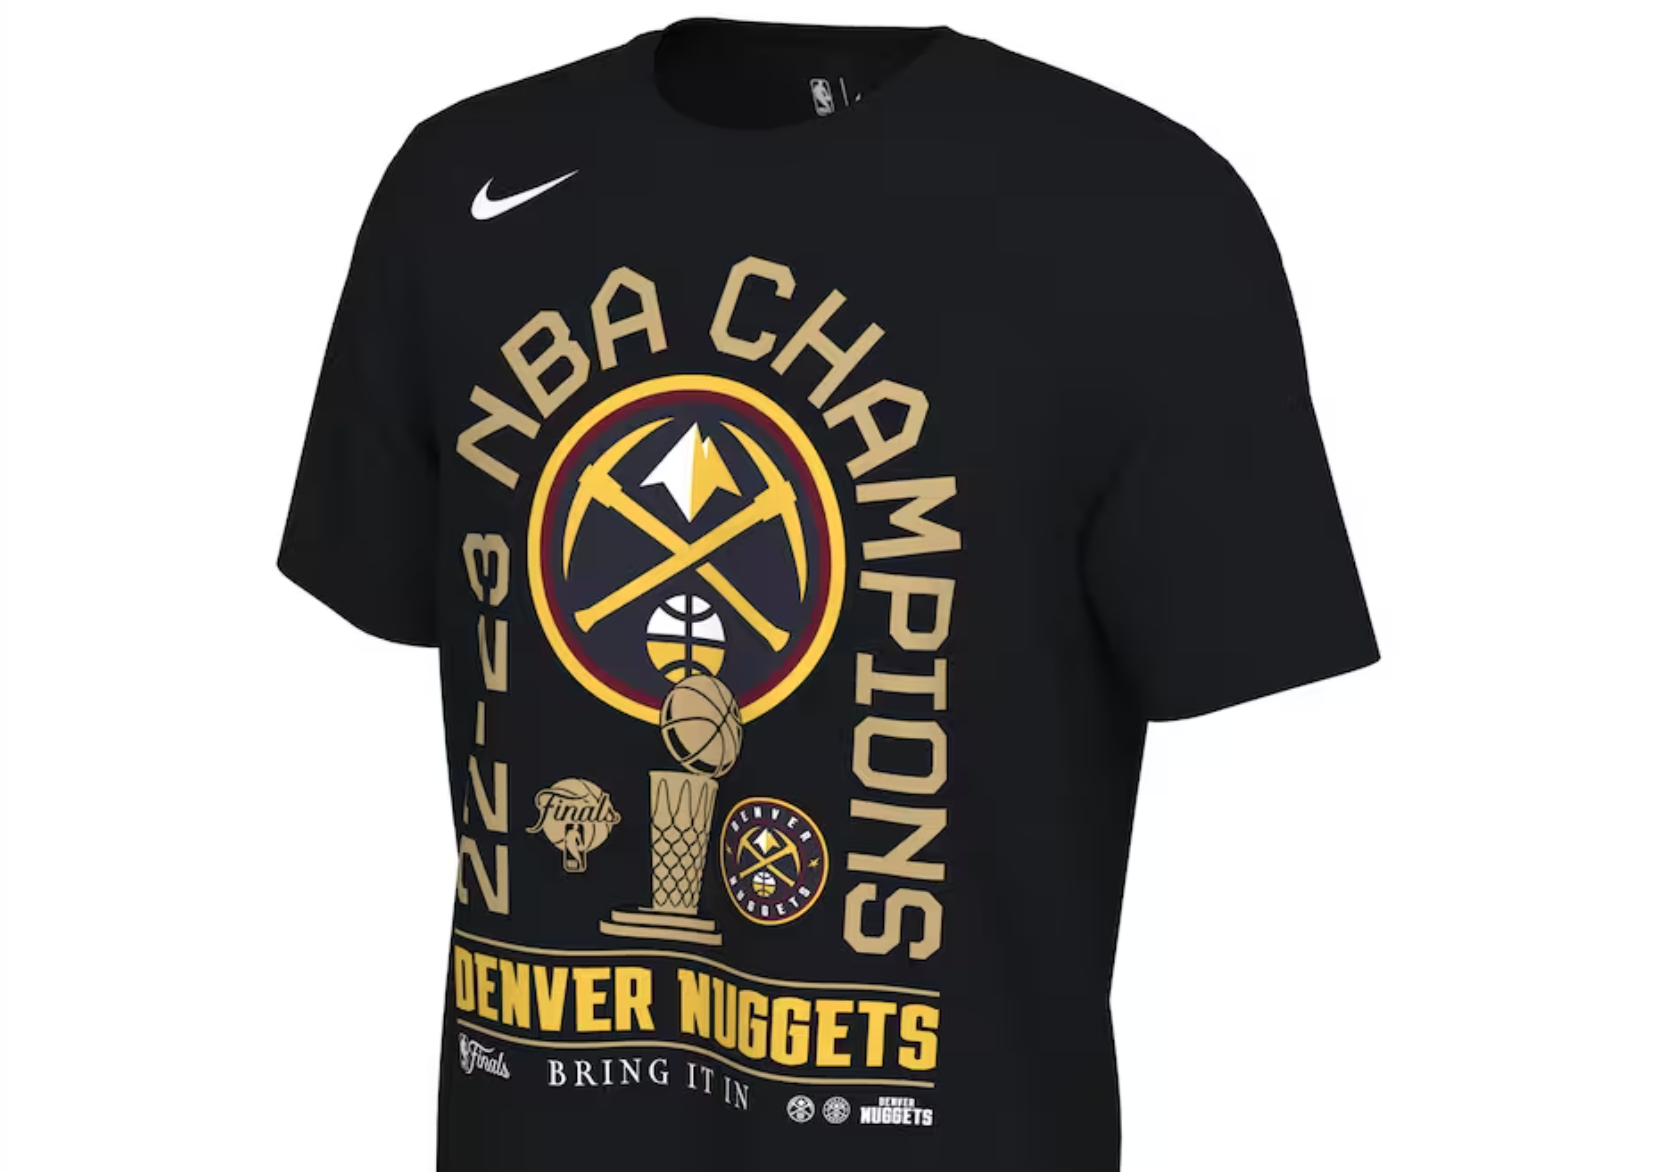 2023 NBA Finals Champions White Design Baseball Jersey - T-shirts